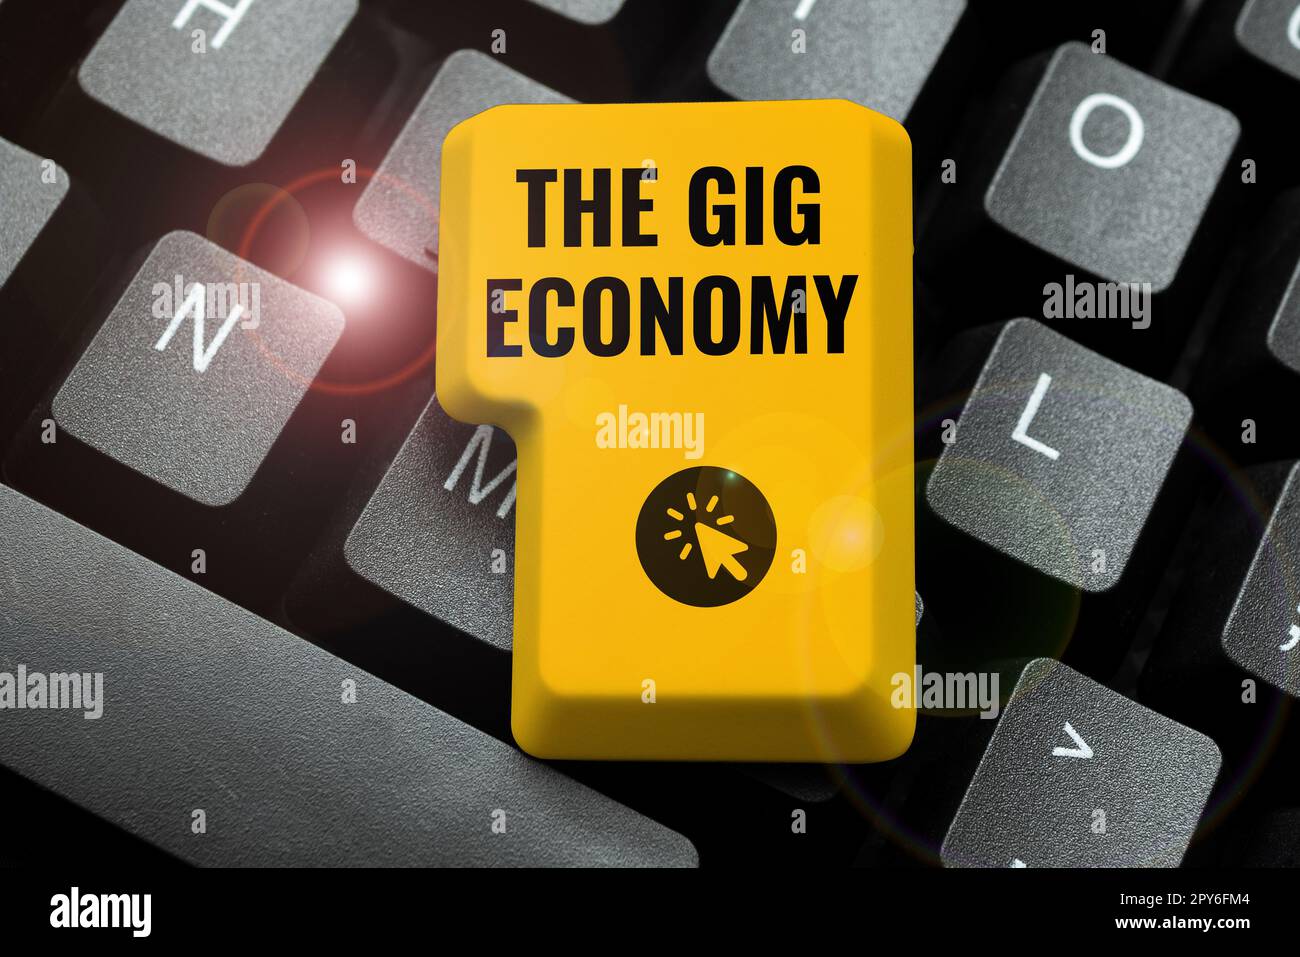 Symbole textuel montrant la Gig Economy. Internet concept marché des contrats à court terme travail indépendant temporaire Banque D'Images